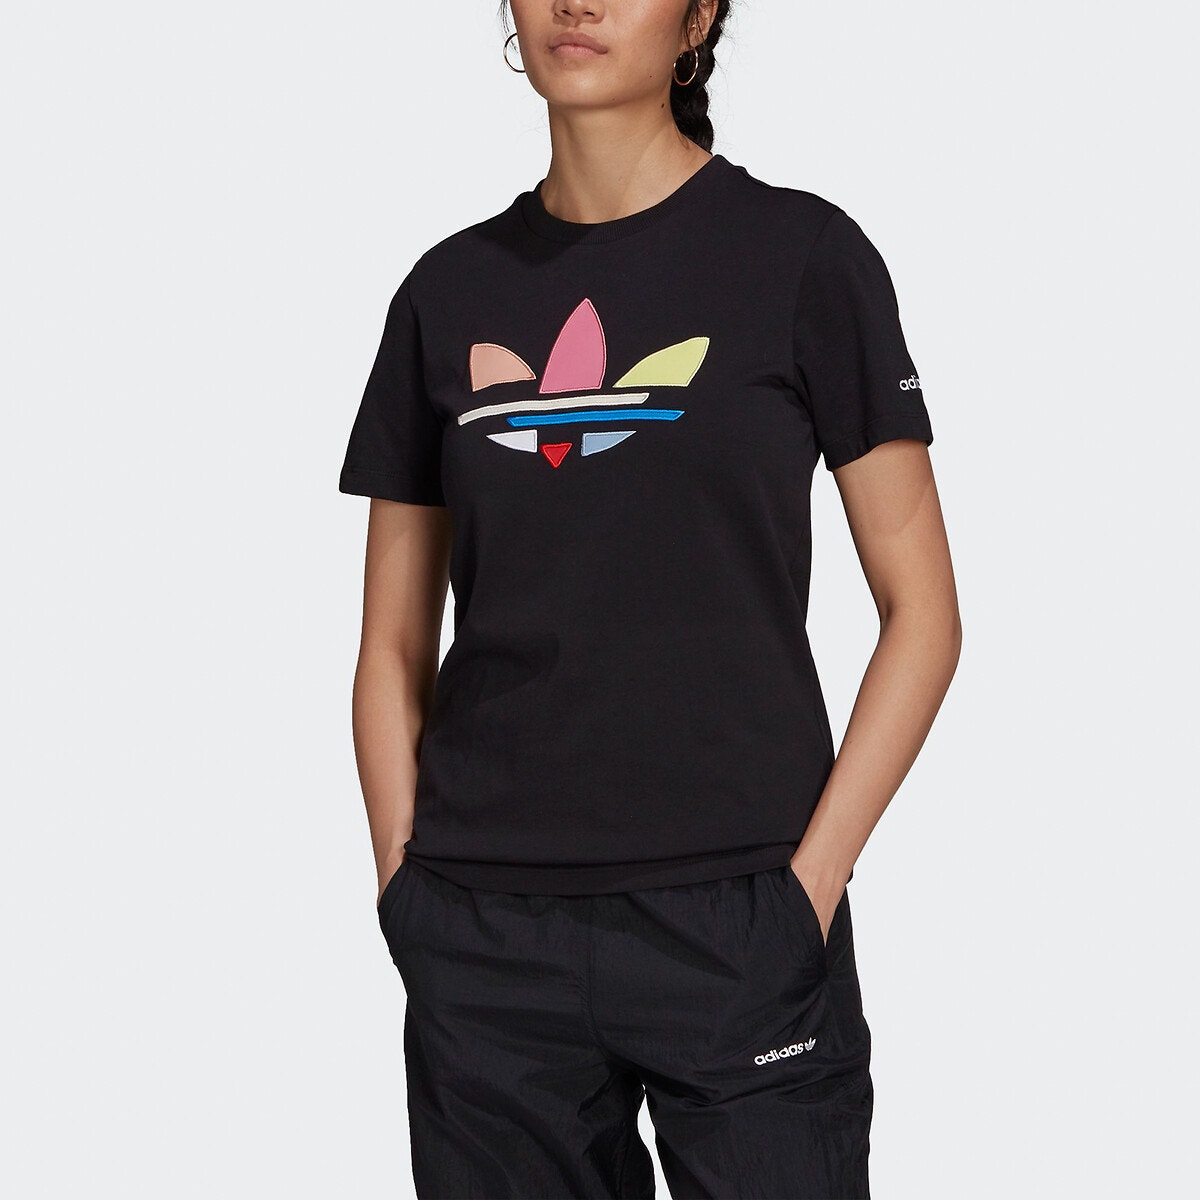 ΓΥΝΑΙΚΑ | Μπλούζες & Πουκάμισα | T-shirts Κοντομάνικο T-shirt, Adicolor